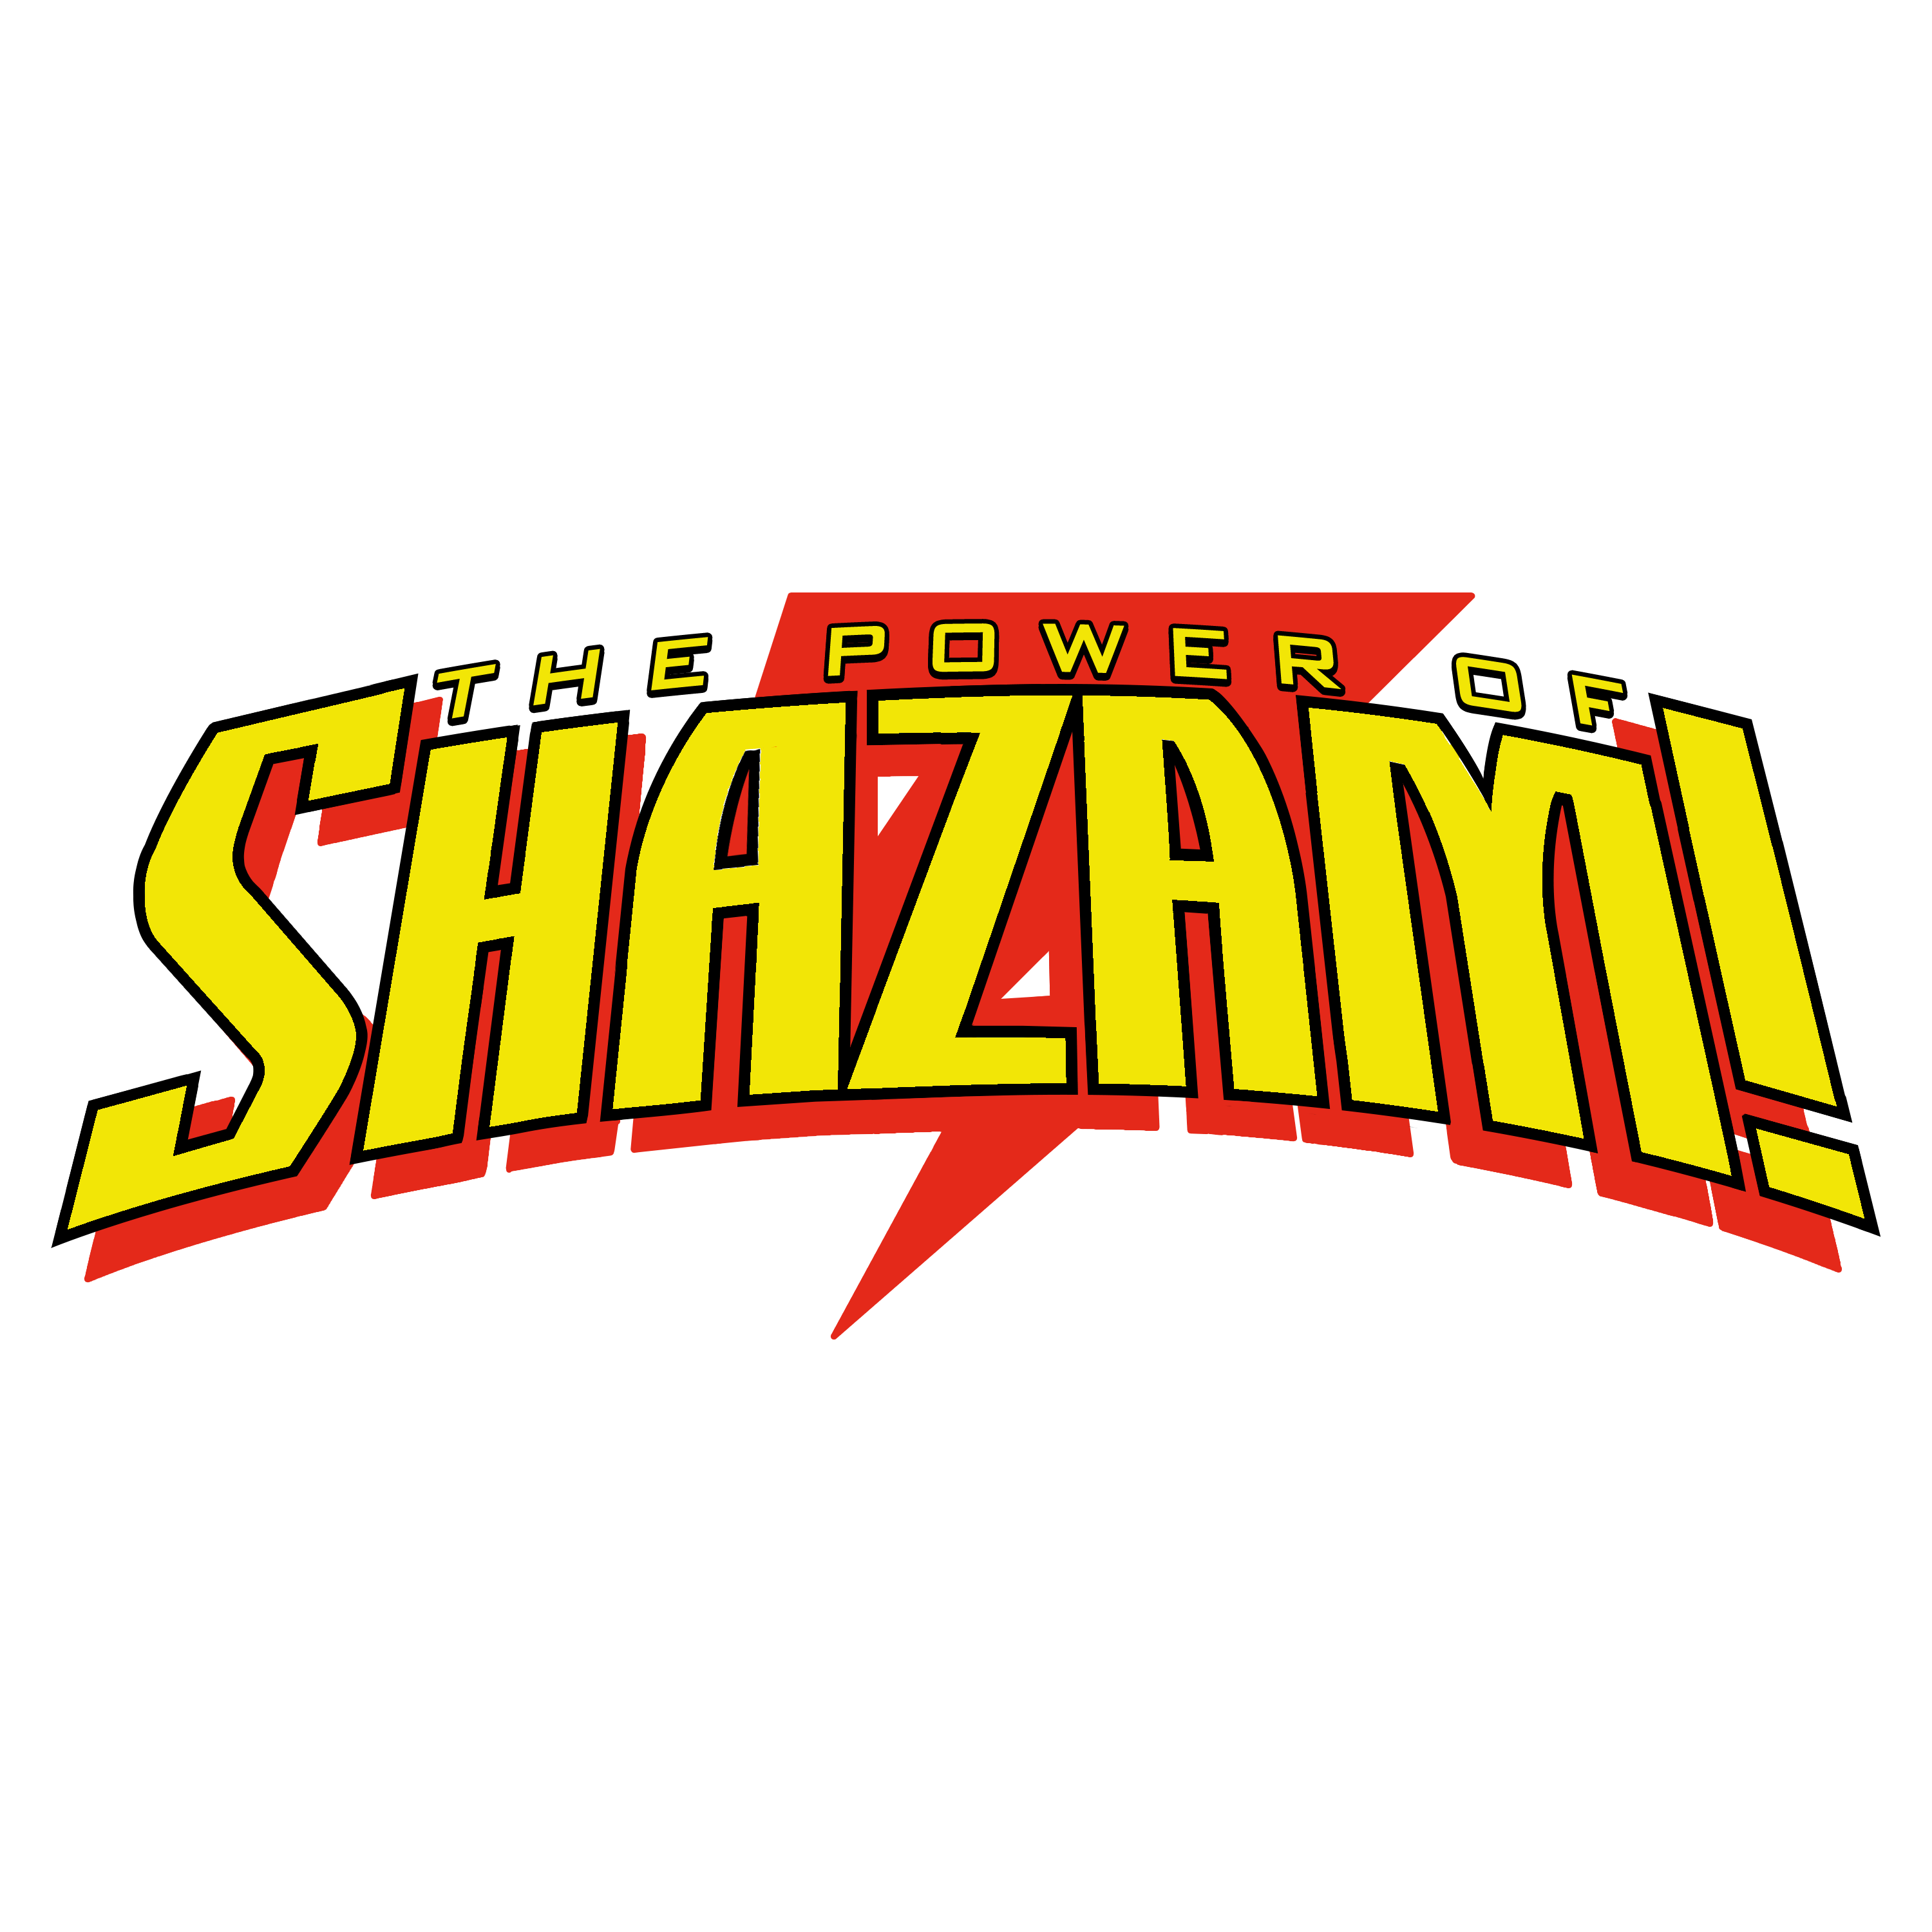 Shazam Logo - Power of Shazam logo (Version 2) recreated with PhotoShop! #shazam